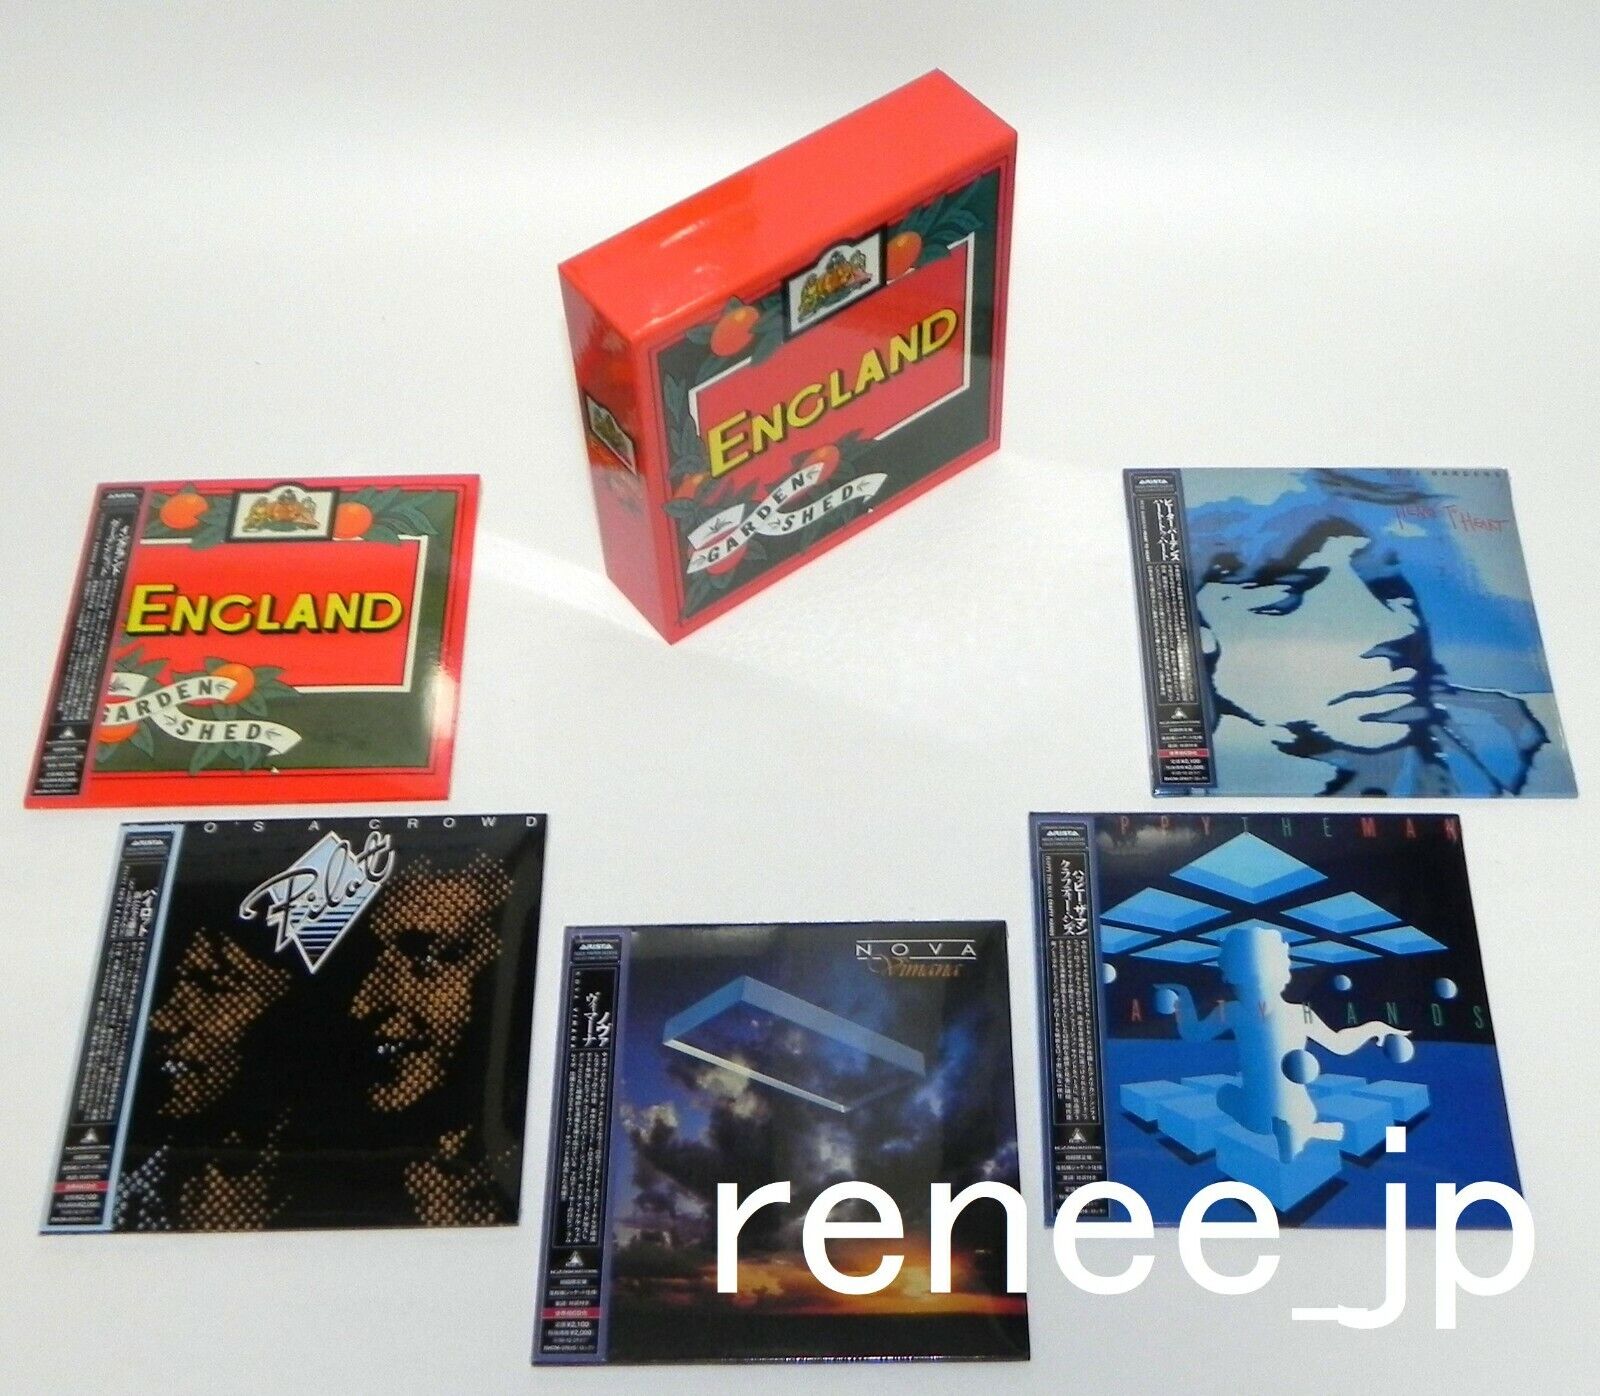 ENGLAND, PILOT, NOVA, etc. / JAPAN Mini LP CD x 5 titles + PROMO BOX Set